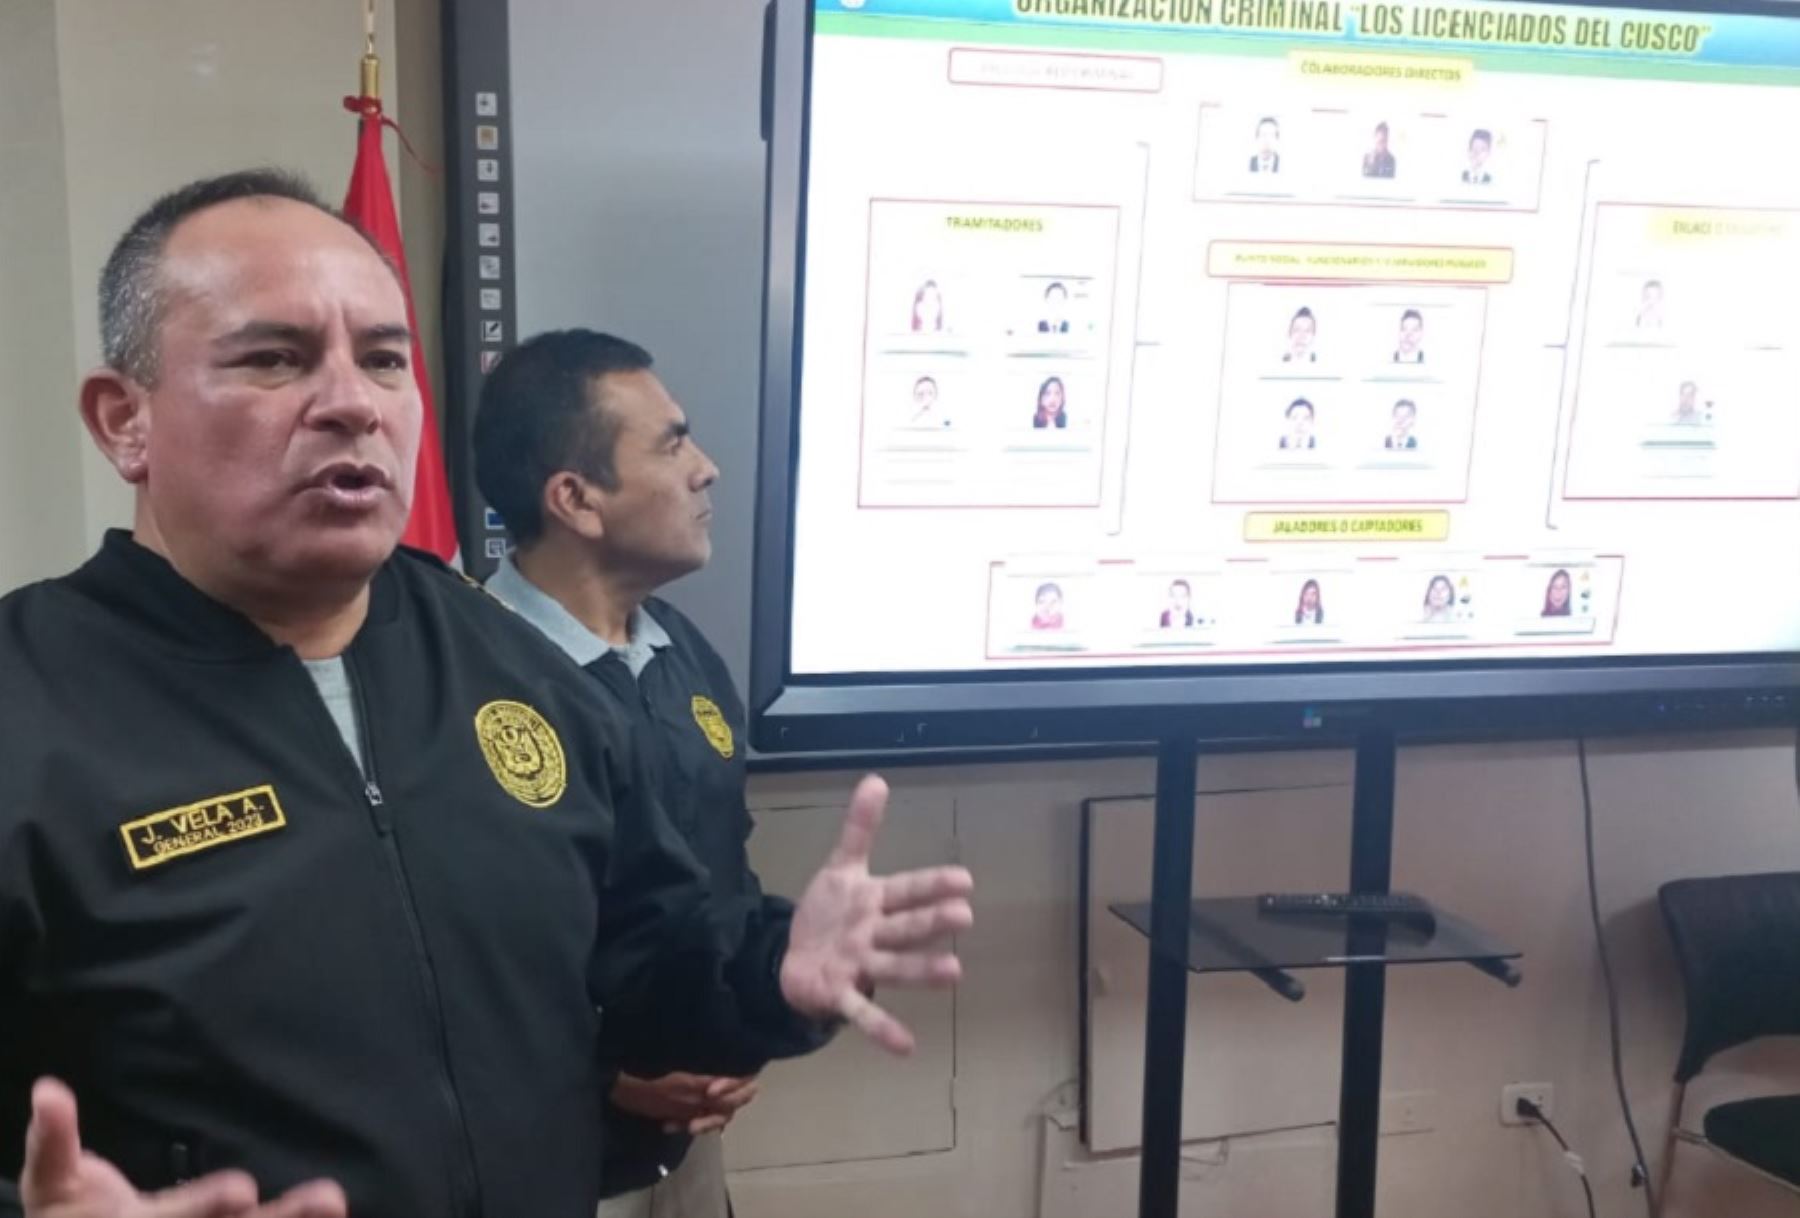 El jefe de la VII Macrorregión Policial Cusco, general PNP Javier Vela, informó que desde marzo del 2019 la organización criminal bautizada como los Licenciados del Cusco estaría implicada en la comisión de los delitos contra la administración pública, tráfico de influencias, contra la tranquilidad pública, en agravio del Estado peruano.